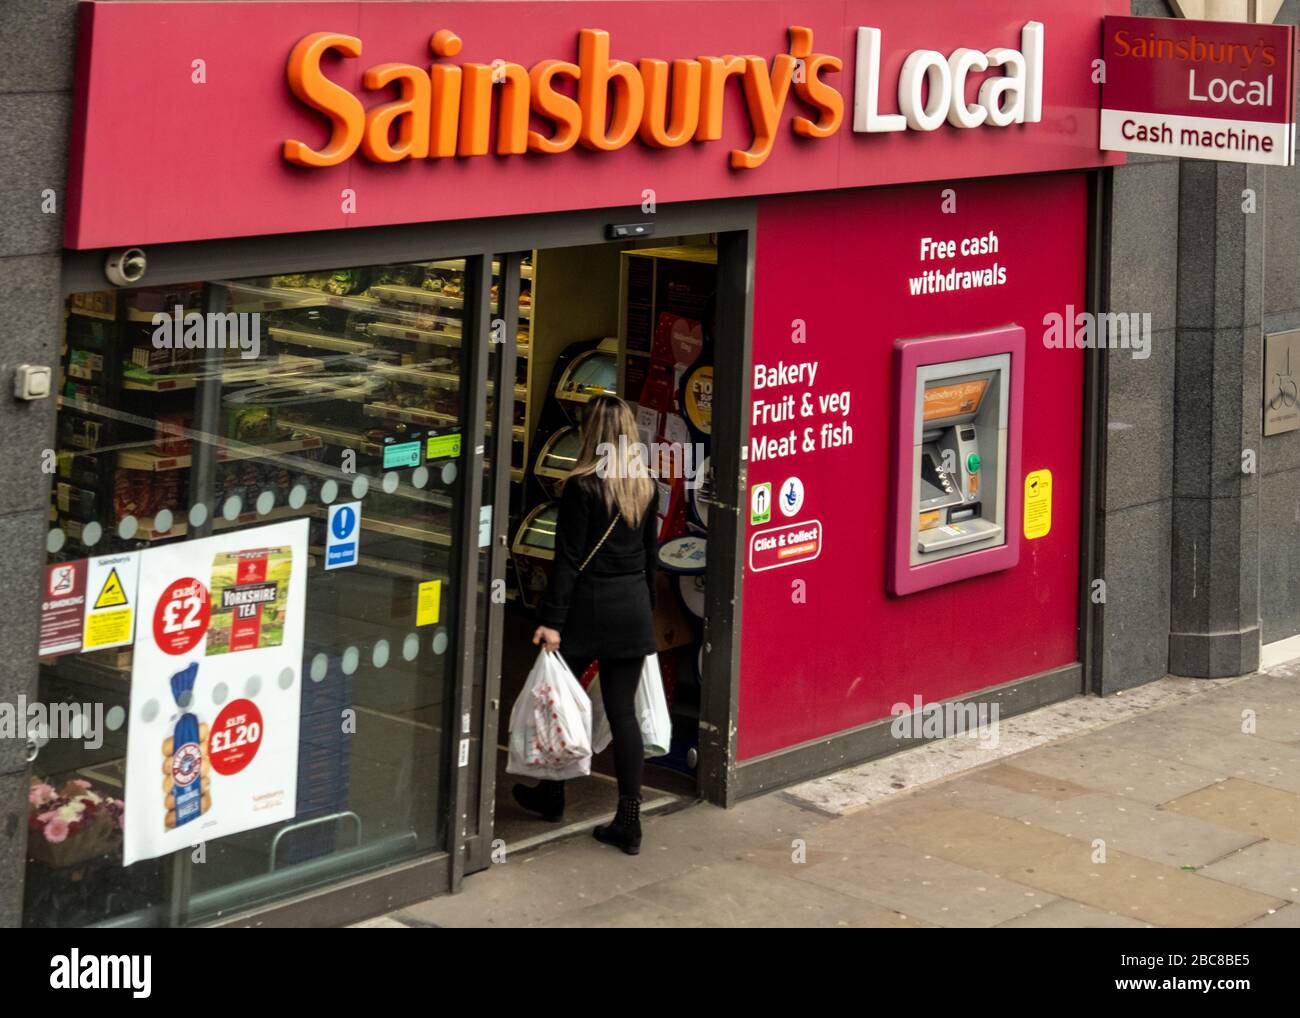 Sainsbury's Local, filiale britannica del supermercato, logo esterno / segnaletica - Londra Foto Stock